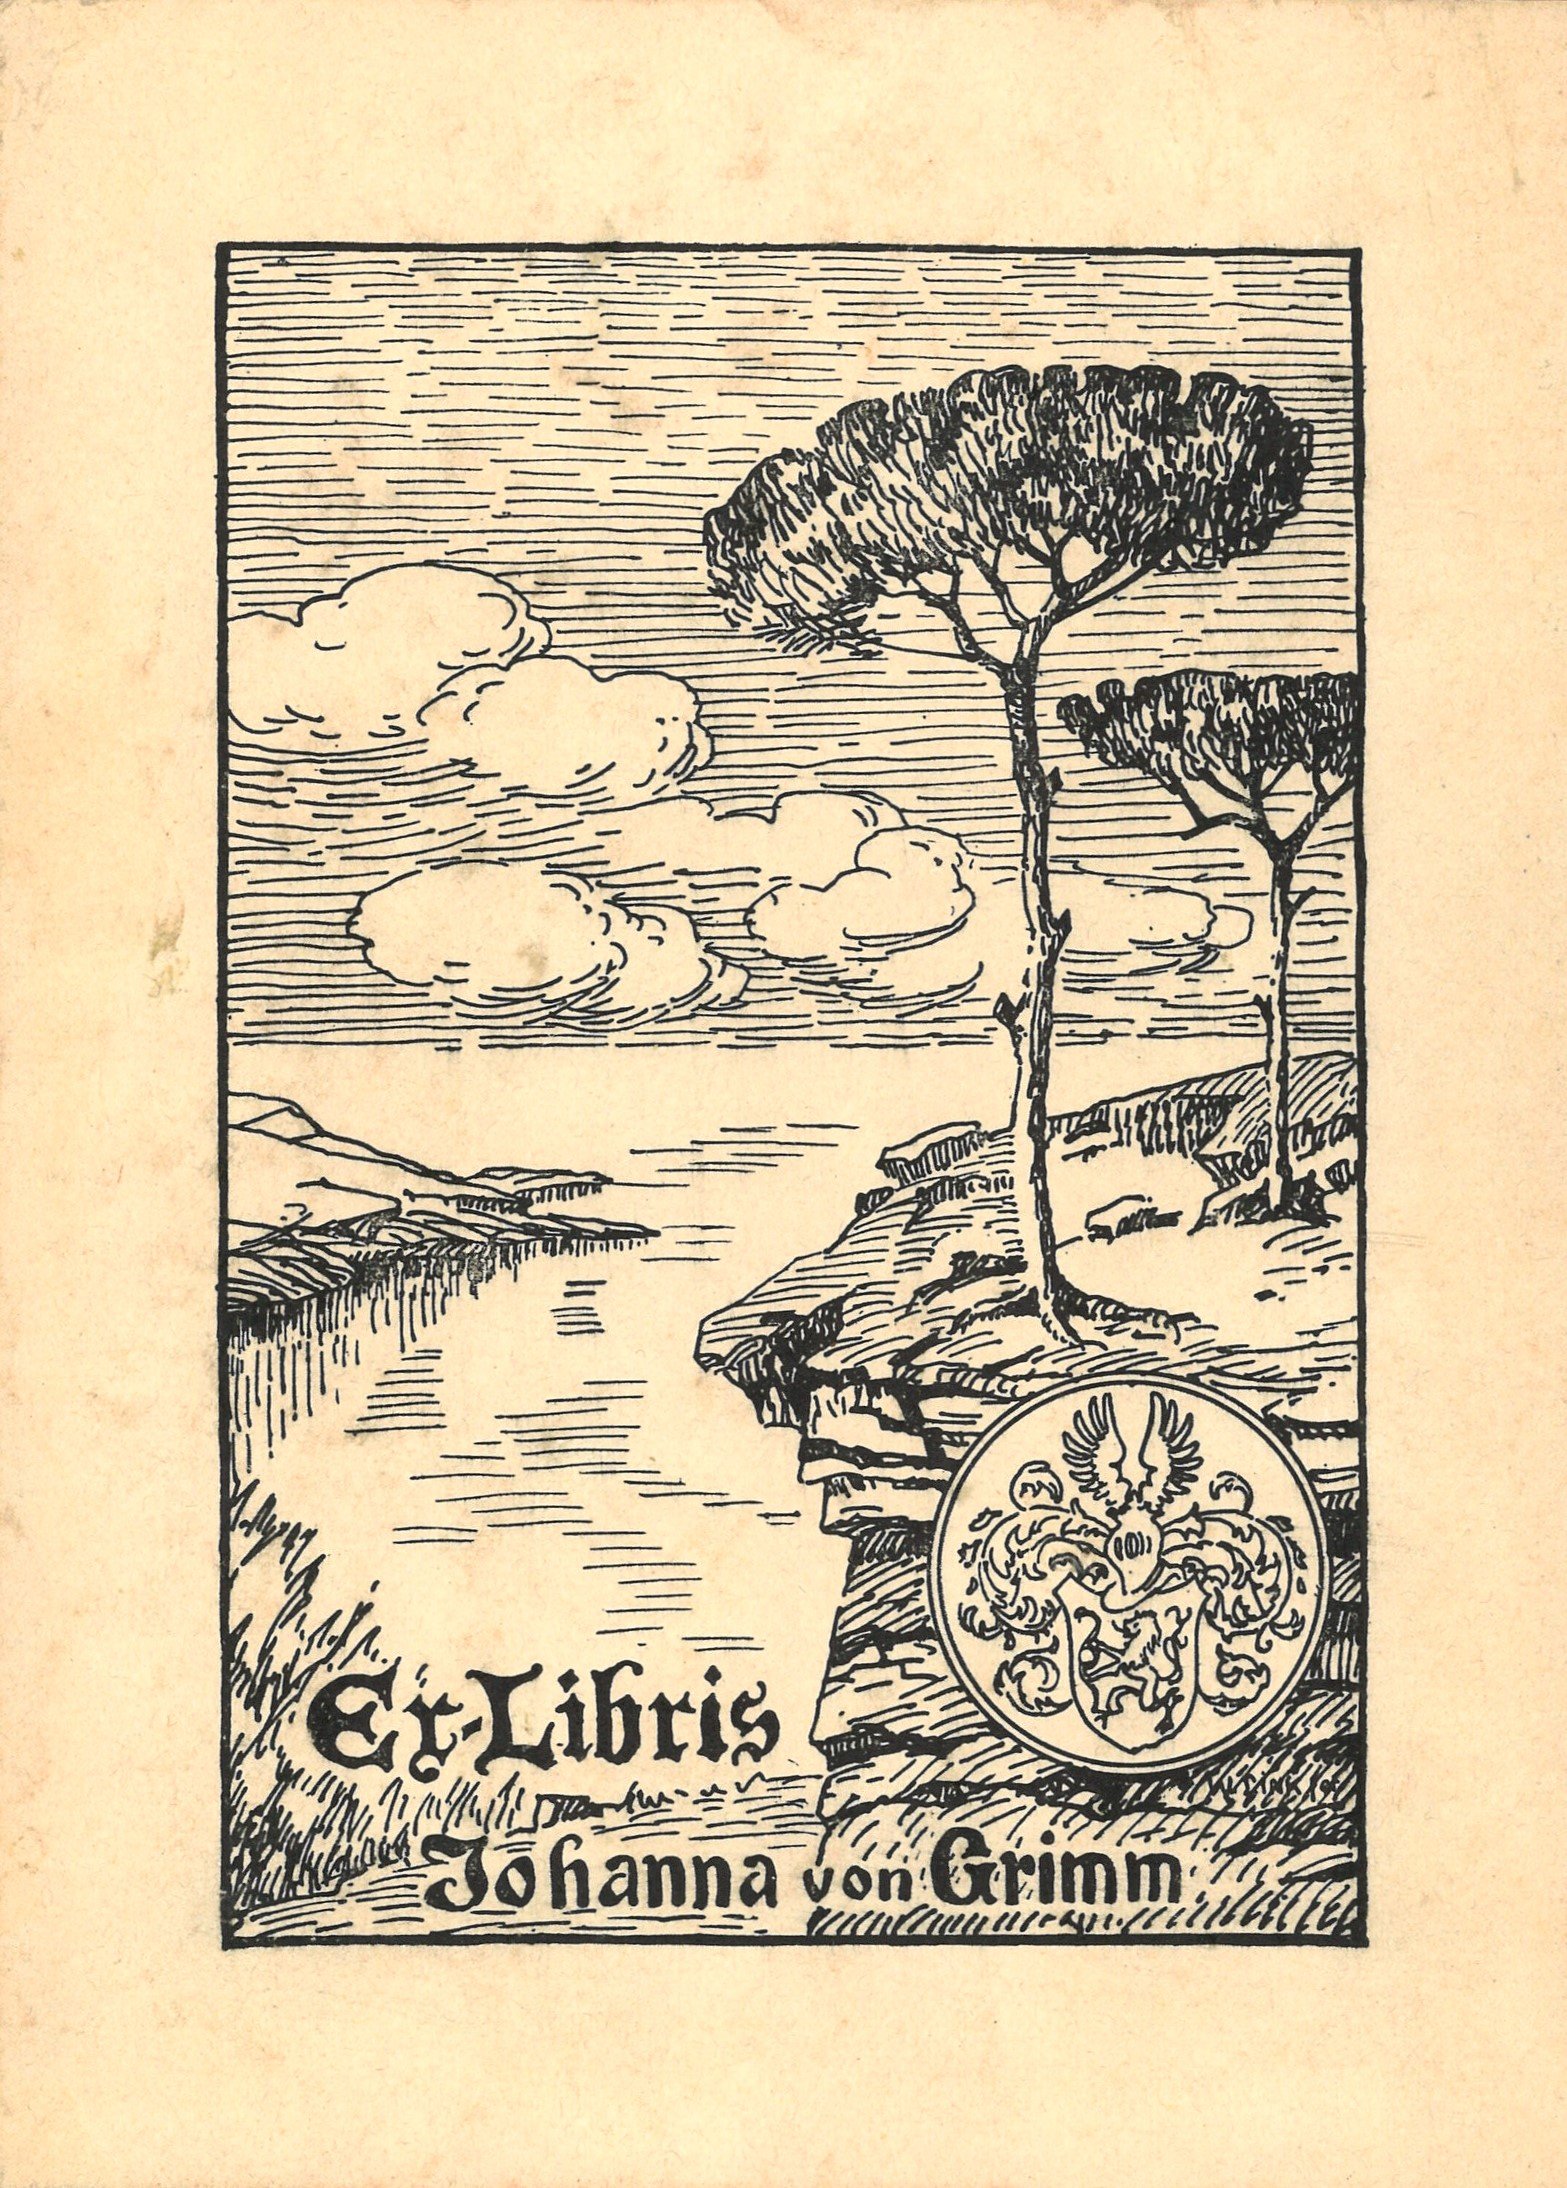 Exlibris Johanna von Grimm (Landesgeschichtliche Vereinigung für die Mark Brandenburg e.V. CC BY)